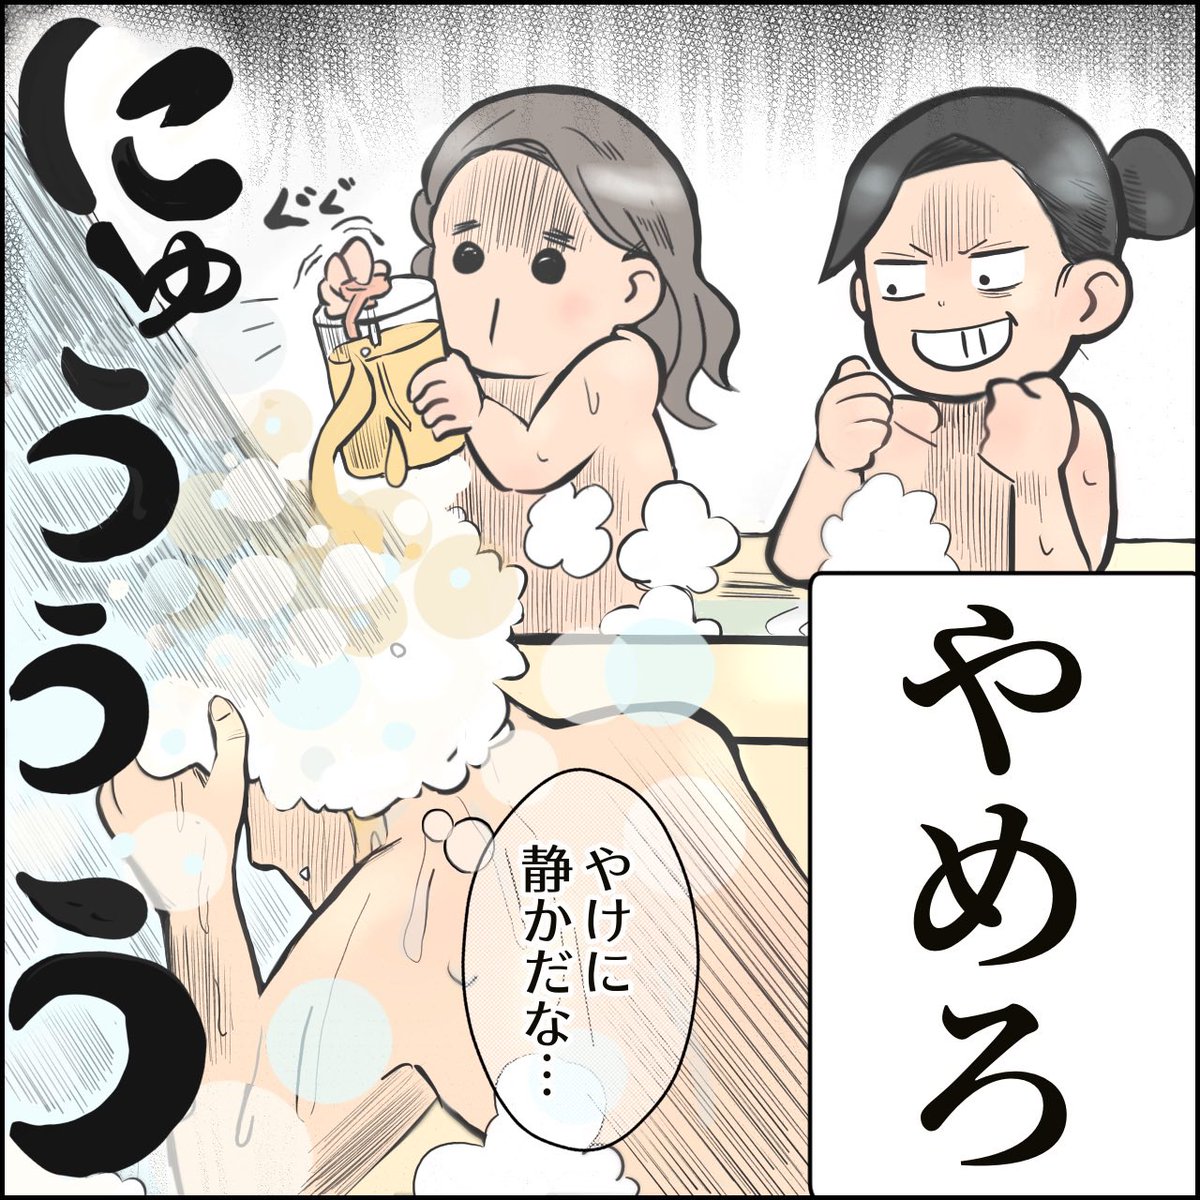 お風呂にて

#育児漫画 #育児絵日記 #エッセイ漫画 